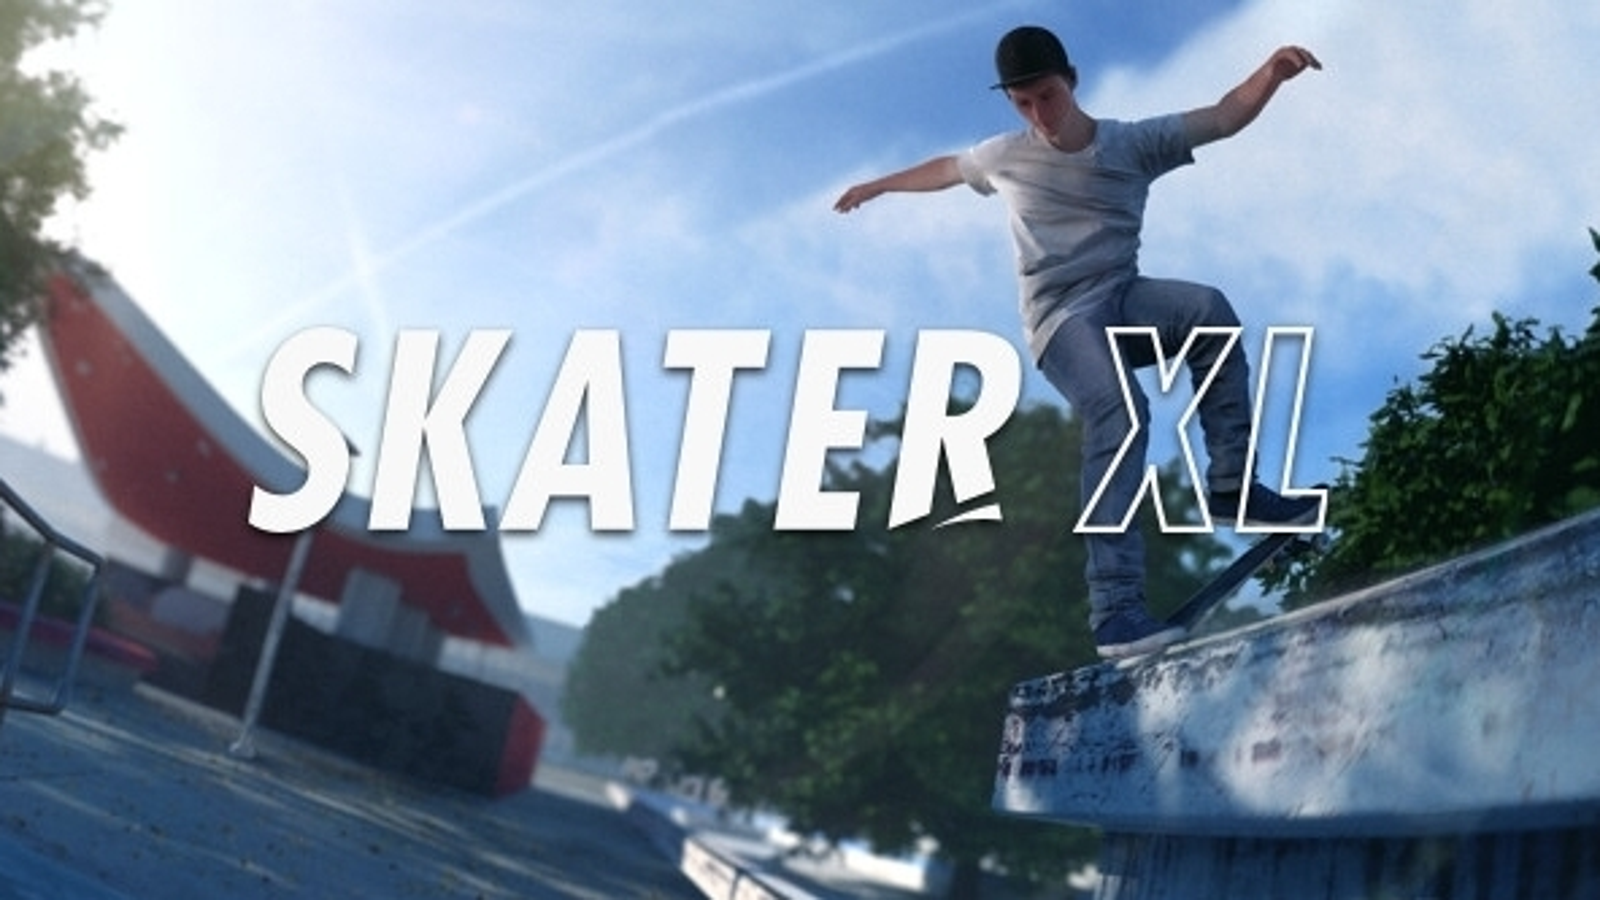 Jogos de skate de xbox 360